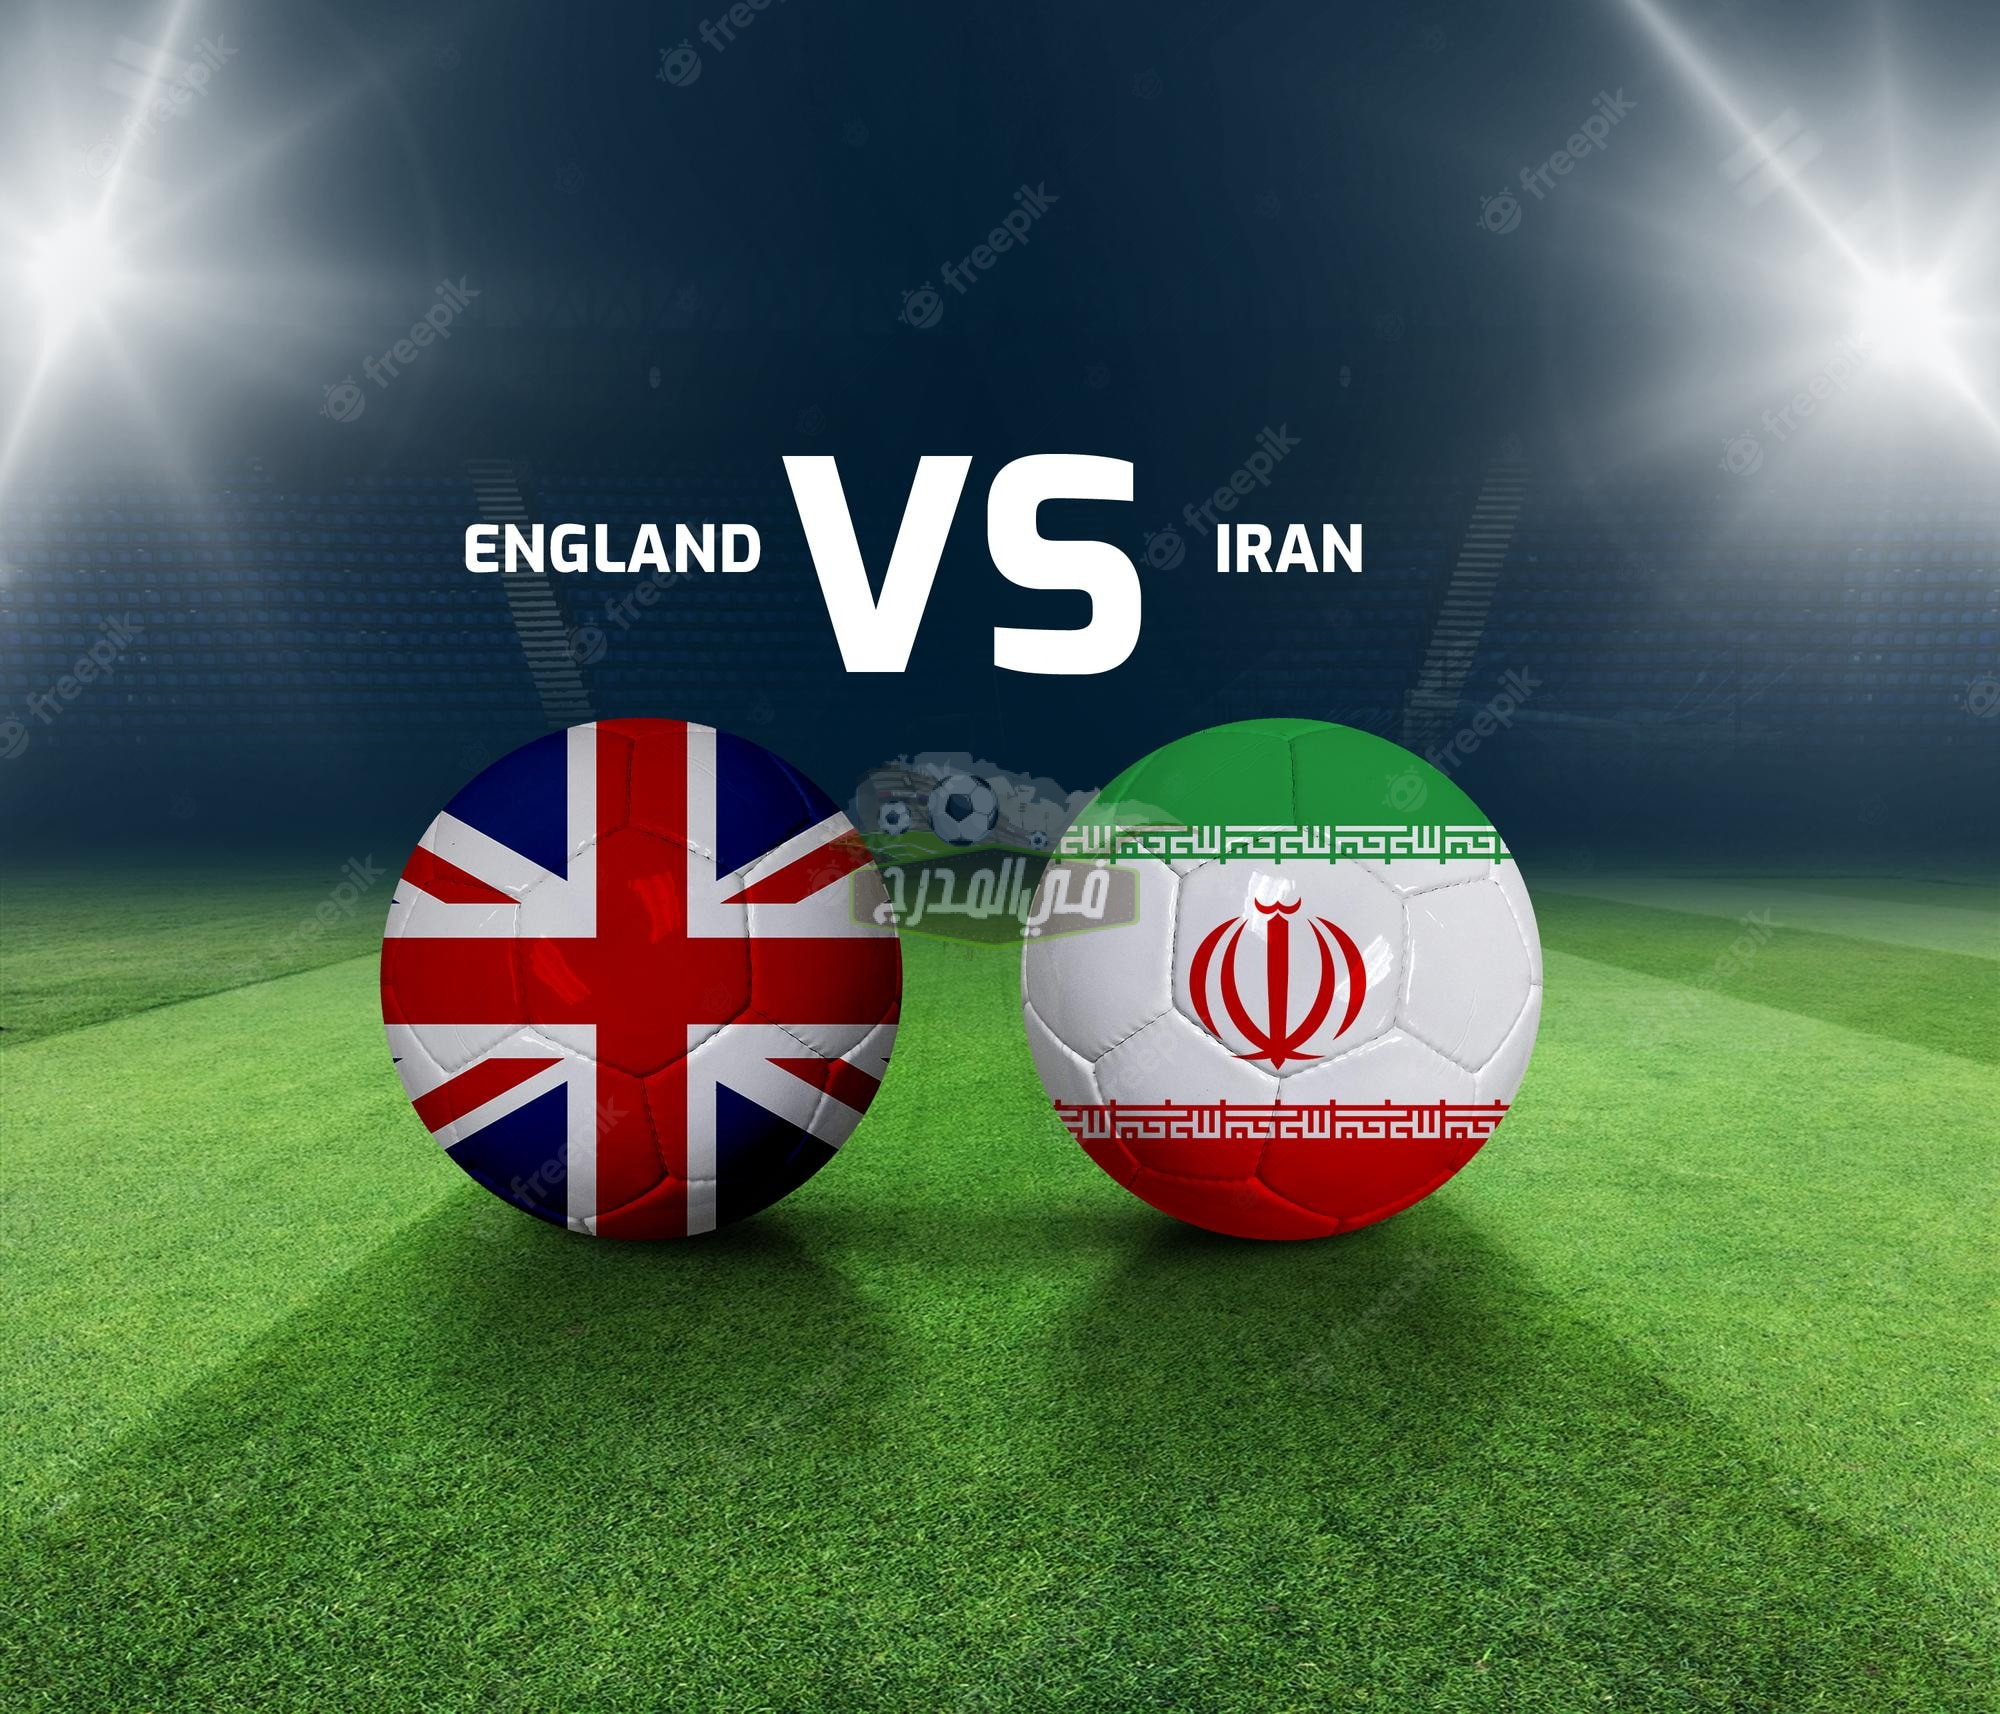 موعد مباراة إنجلترا وإيران England vs Iran في كأس العالم 2022 والقنوات الناقلة لها